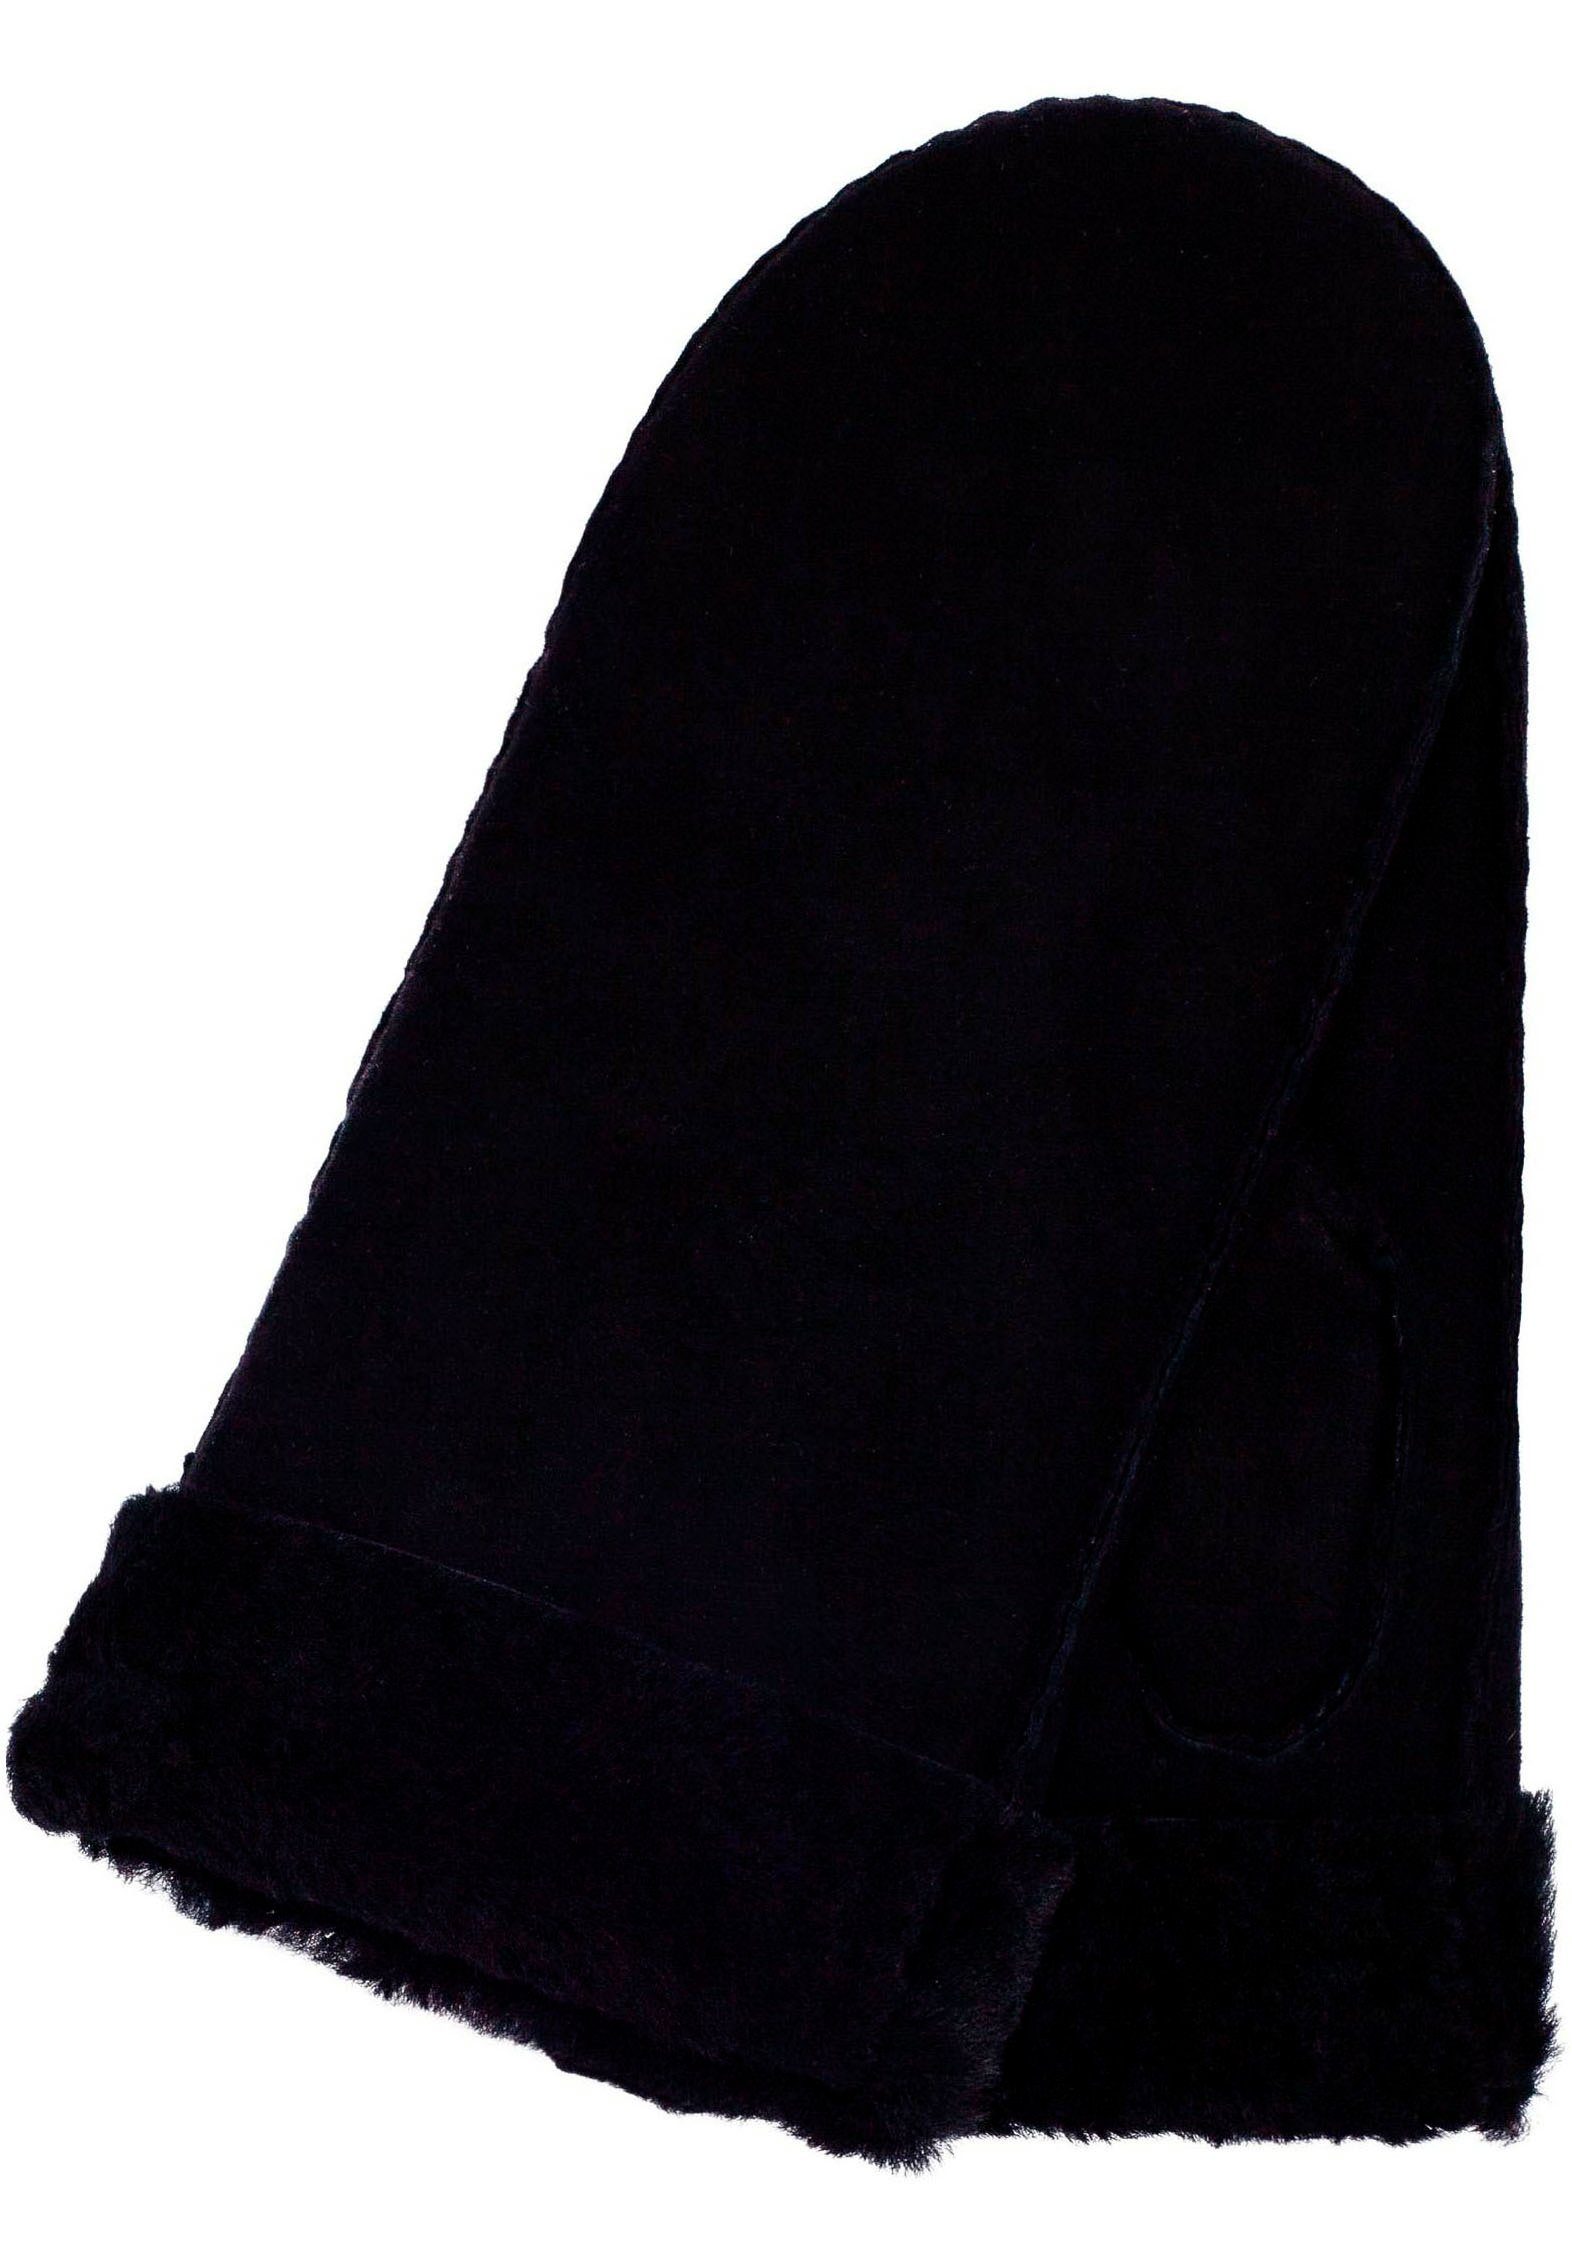 KESSLER Fäustlinge schlankes Design mit breitem Umschlag black